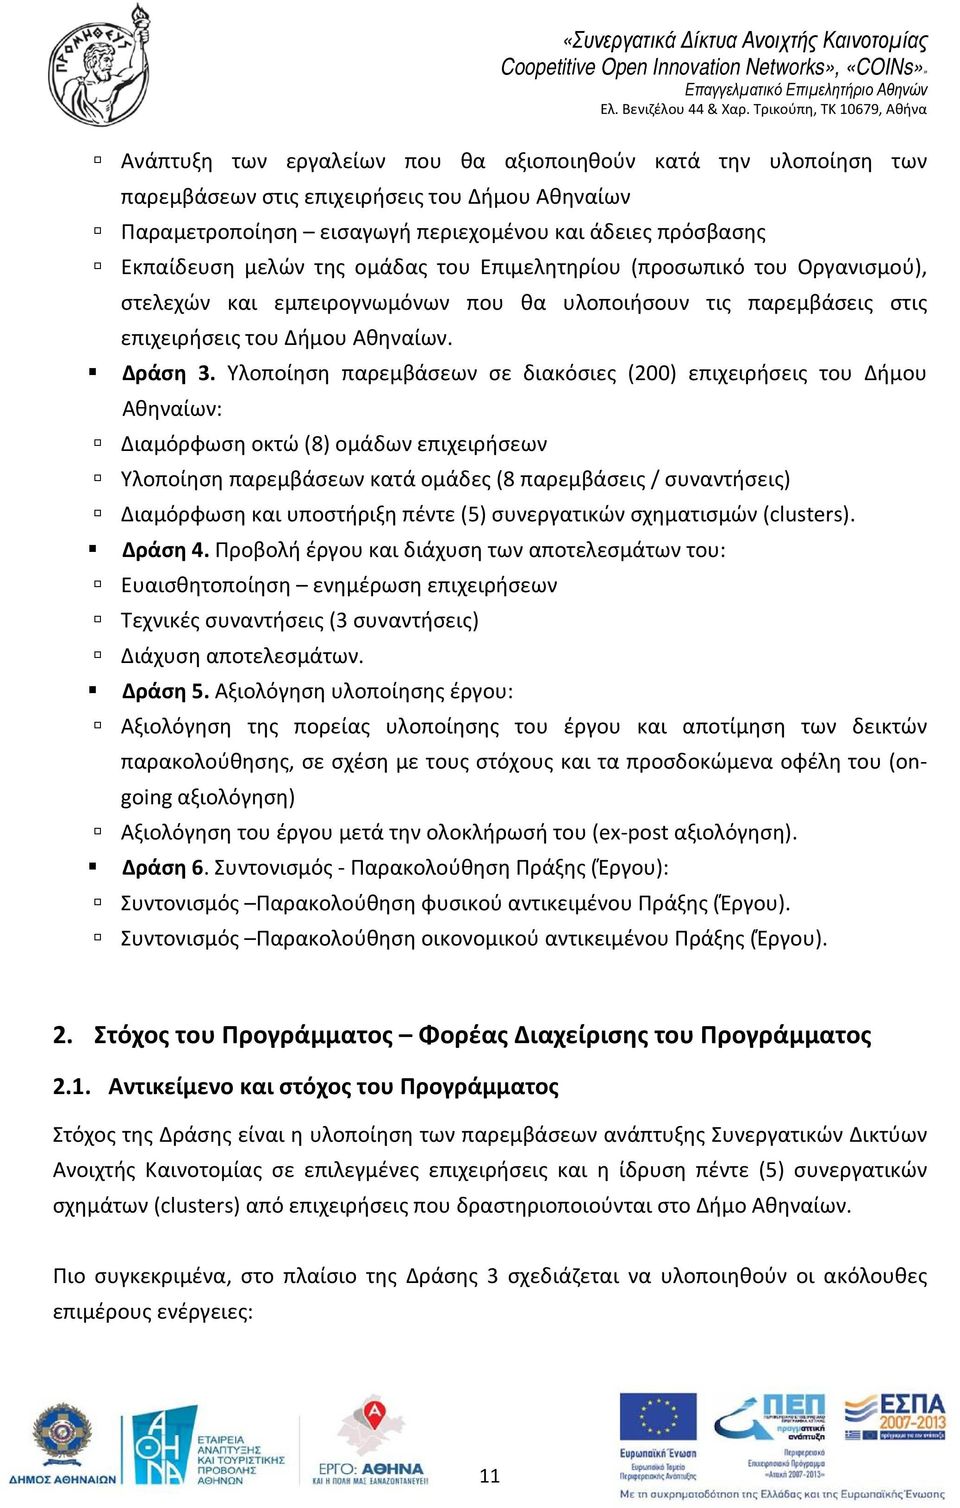 Υλοποίηση παρεμβάσεων σε διακόσιες (200) επιχειρήσεις του Δήμου Αθηναίων: Διαμόρφωση οκτώ (8) ομάδων επιχειρήσεων Υλοποίηση παρεμβάσεων κατά ομάδες (8 παρεμβάσεις / συναντήσεις) Διαμόρφωση και